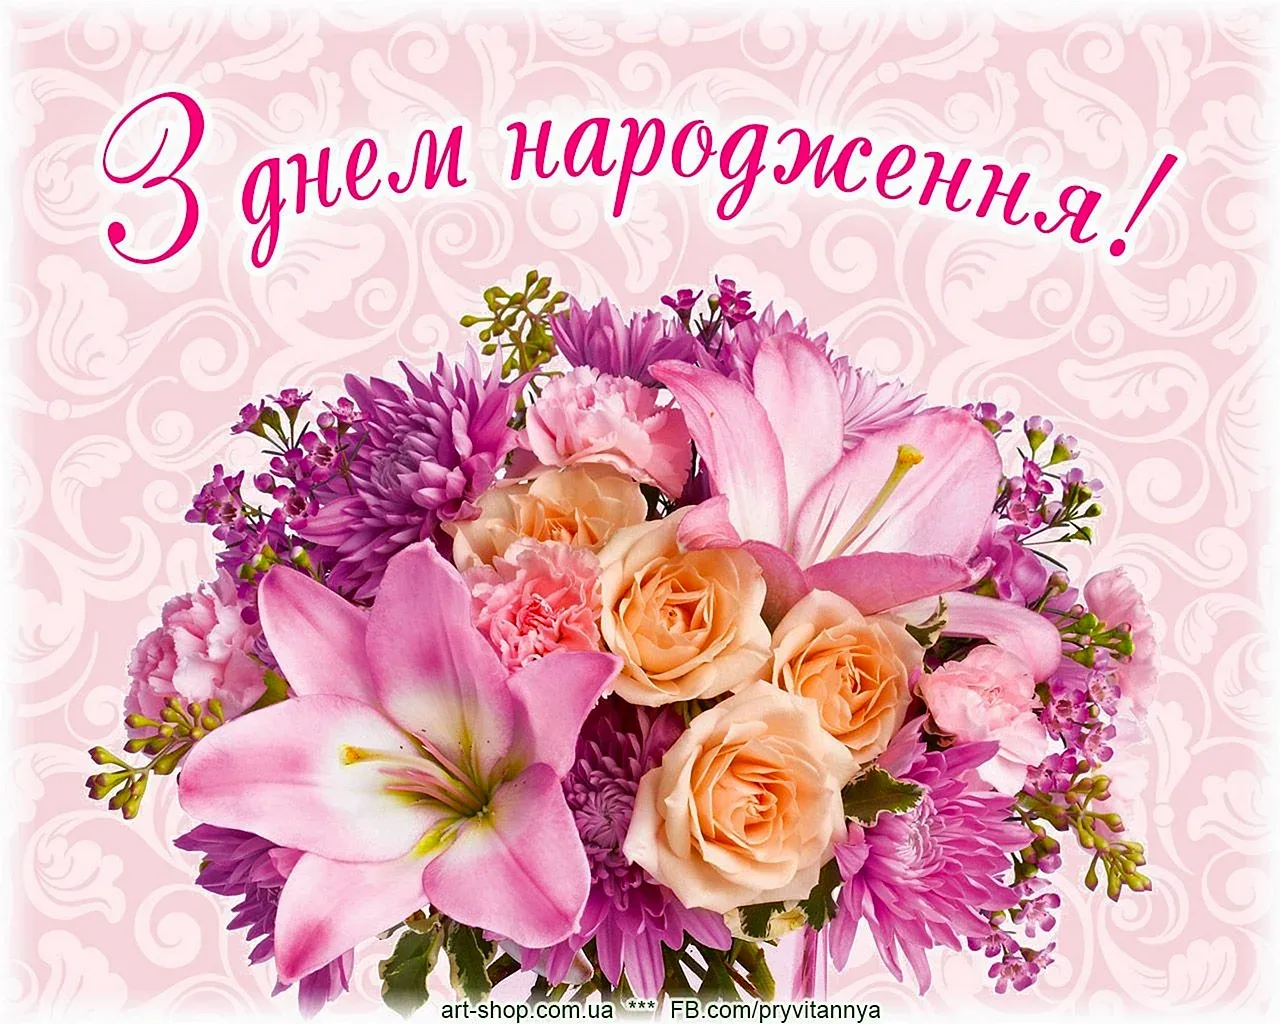 Фото Привітання з днем народження племіннику на українській мові #23